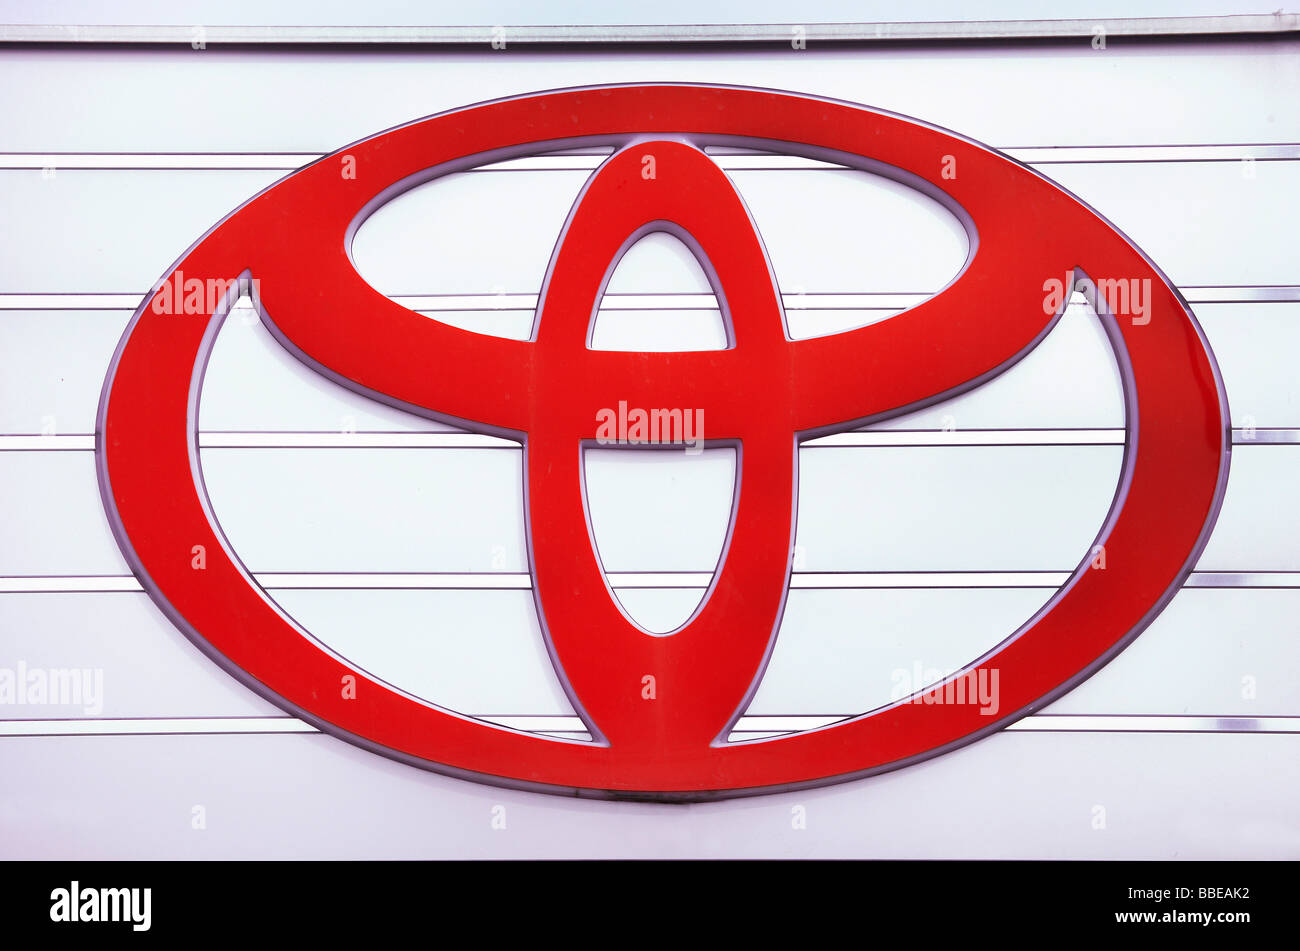 Company logo of the Toyota Motor Corporation Stock Photo